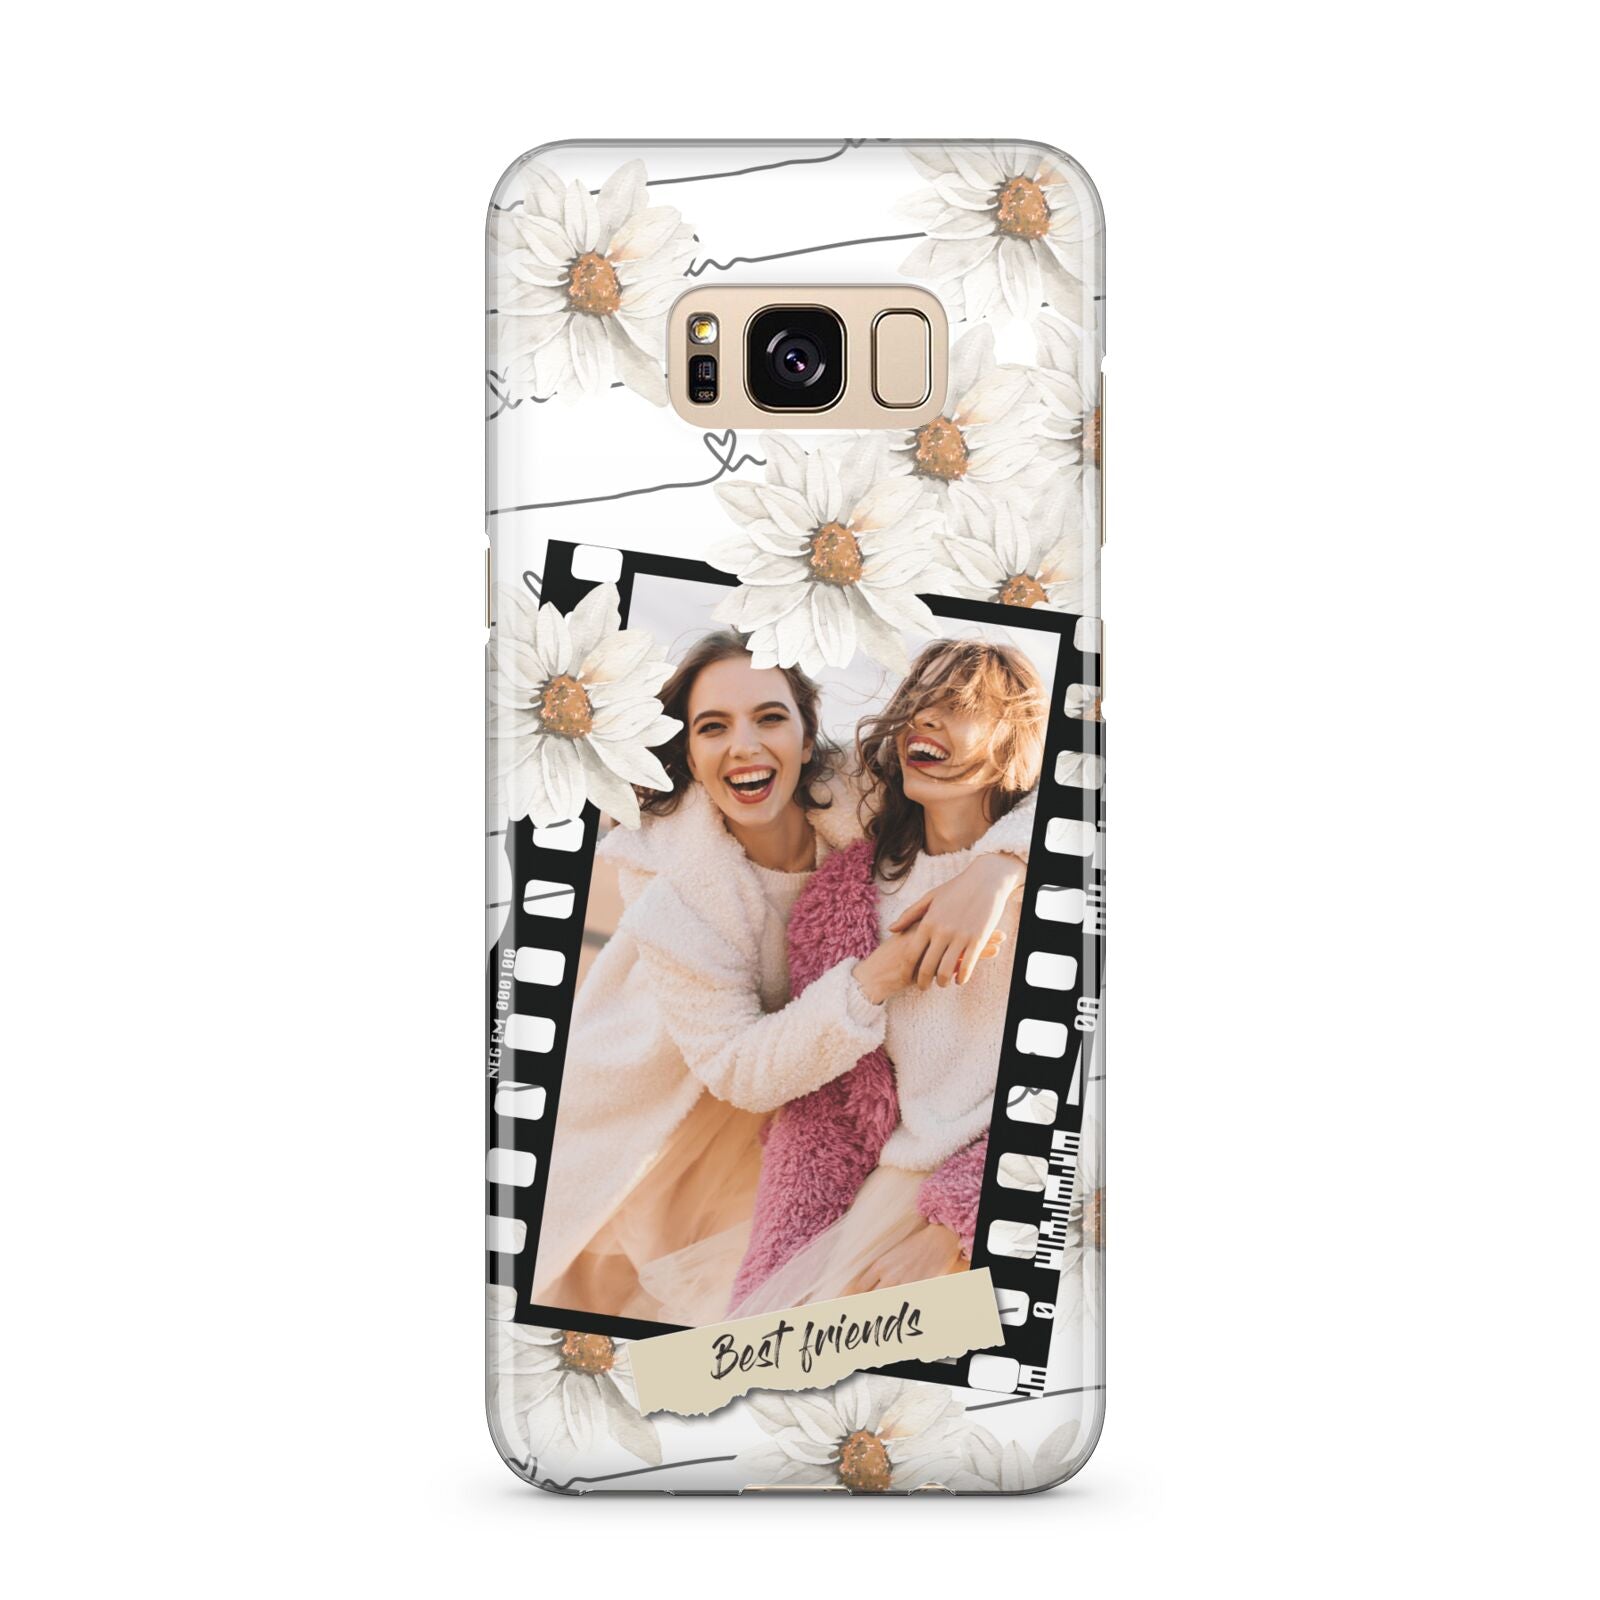 Best Friend Photo Samsung Galaxy S8 Plus Case